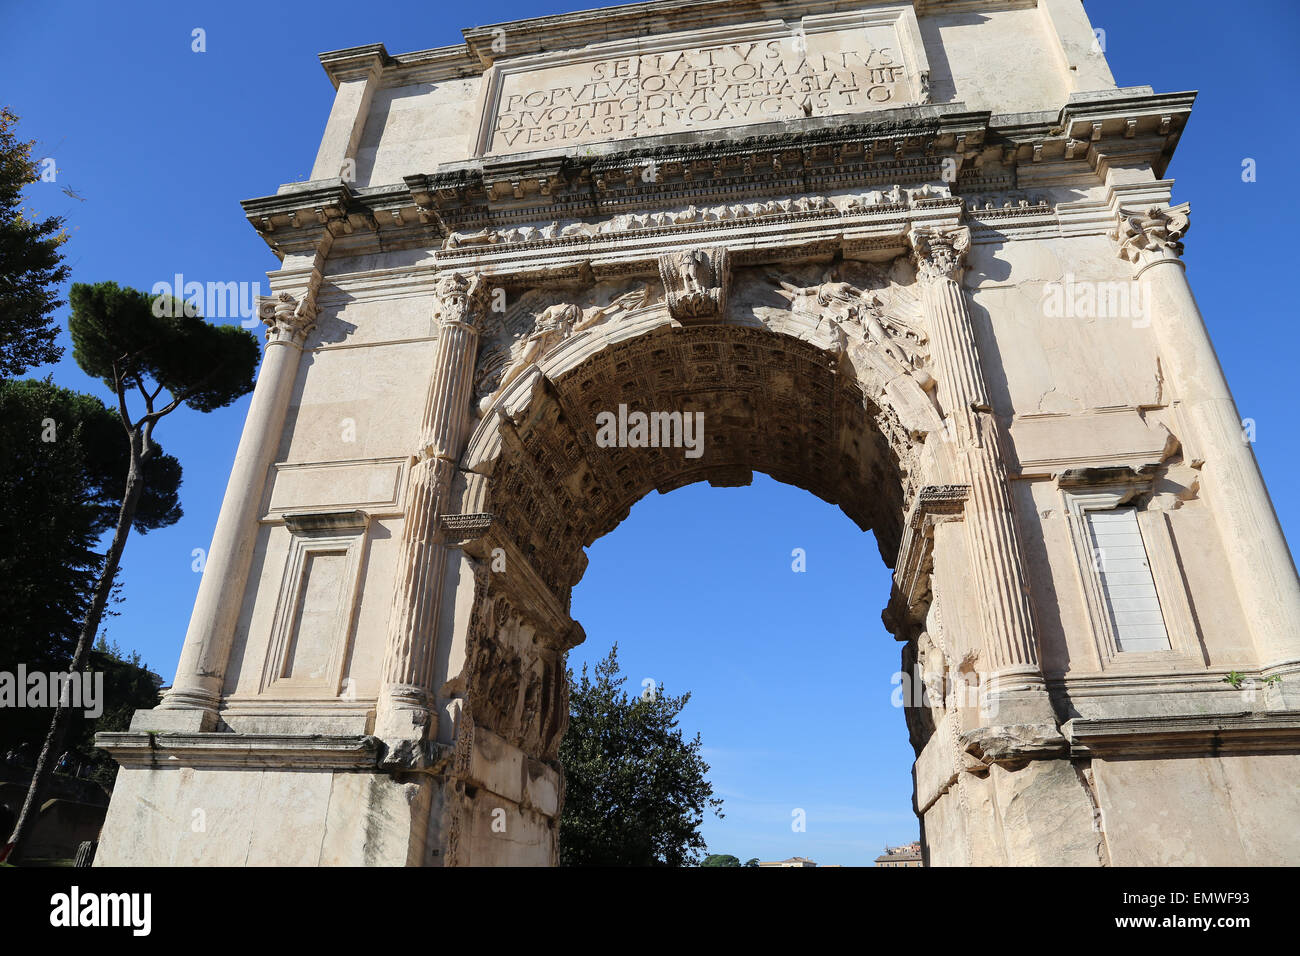 Italia. Roma. Arco de Tito. Construido en el 82 D.C. por el emperador Domiciano para conmemorar las victorias de Titus. Foto de stock